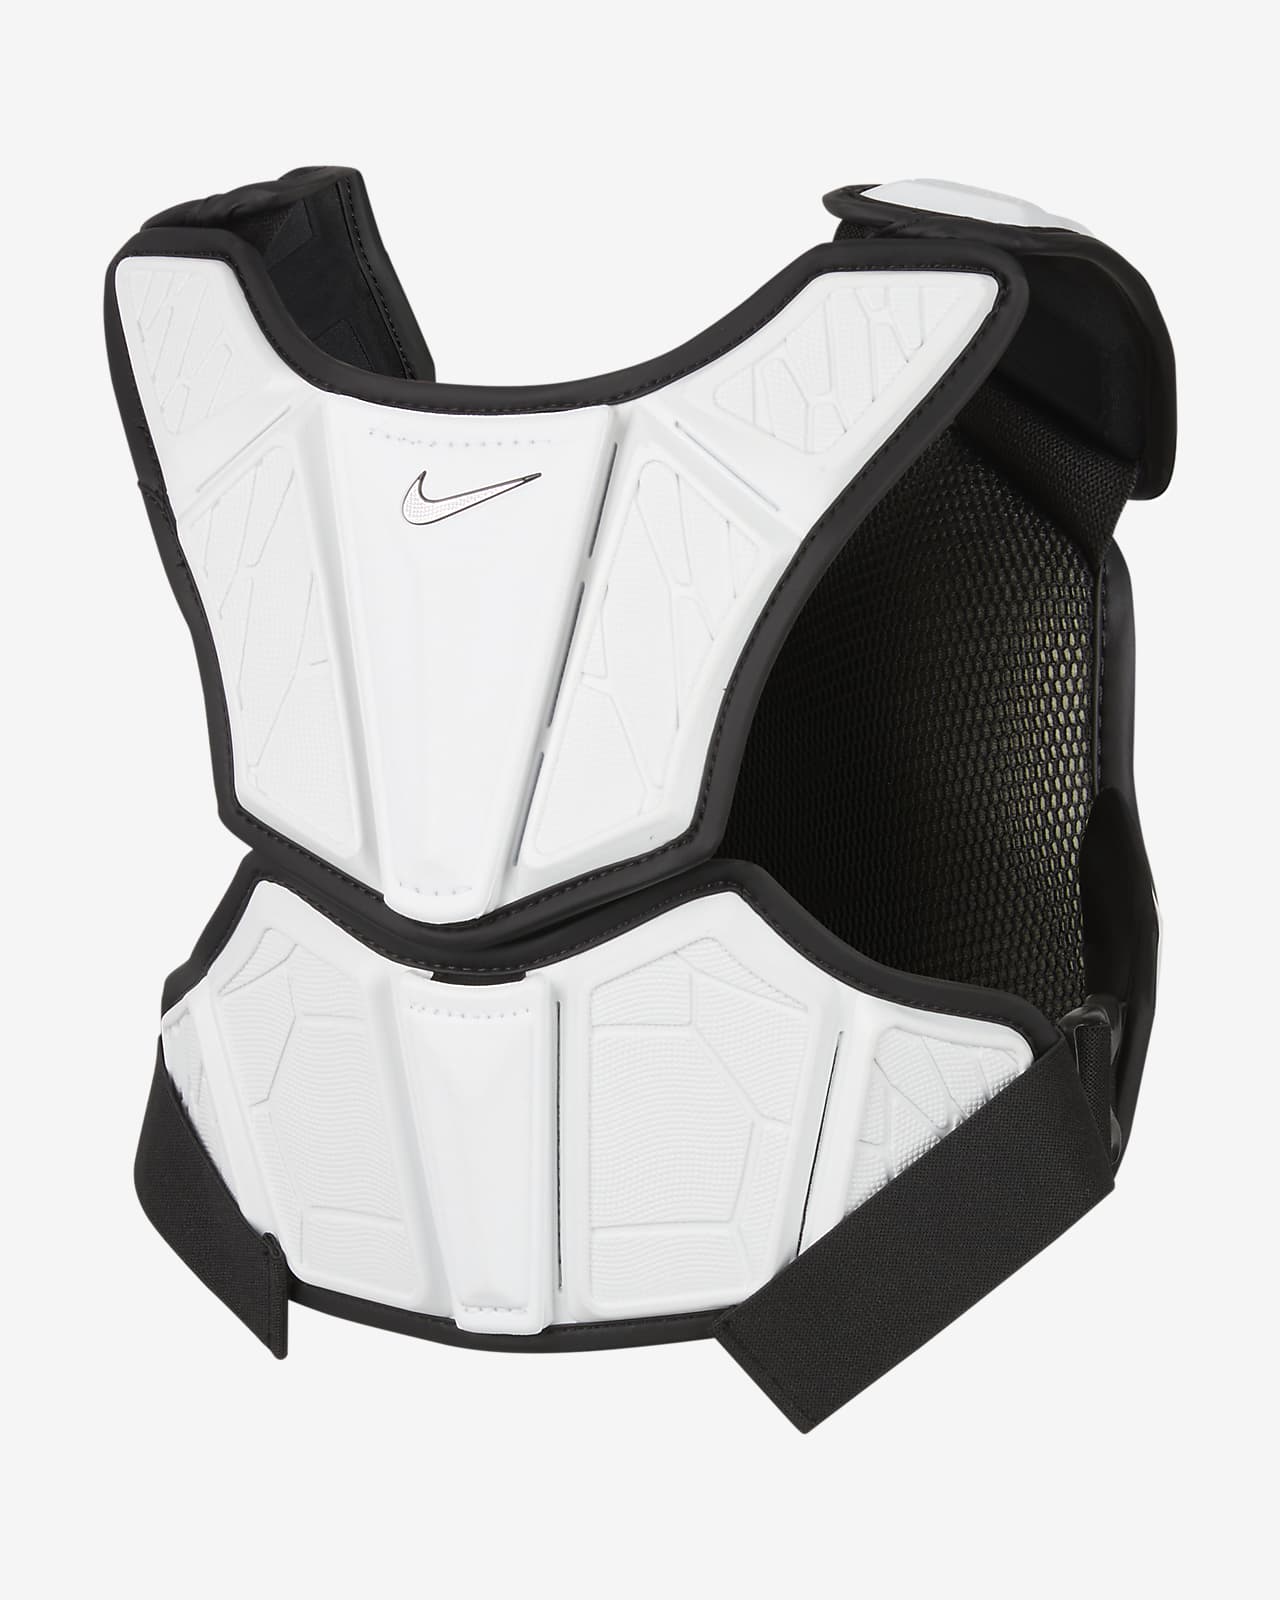 Nike Vapor Elite Men's Lacrosse Shoulder Pad Liner.